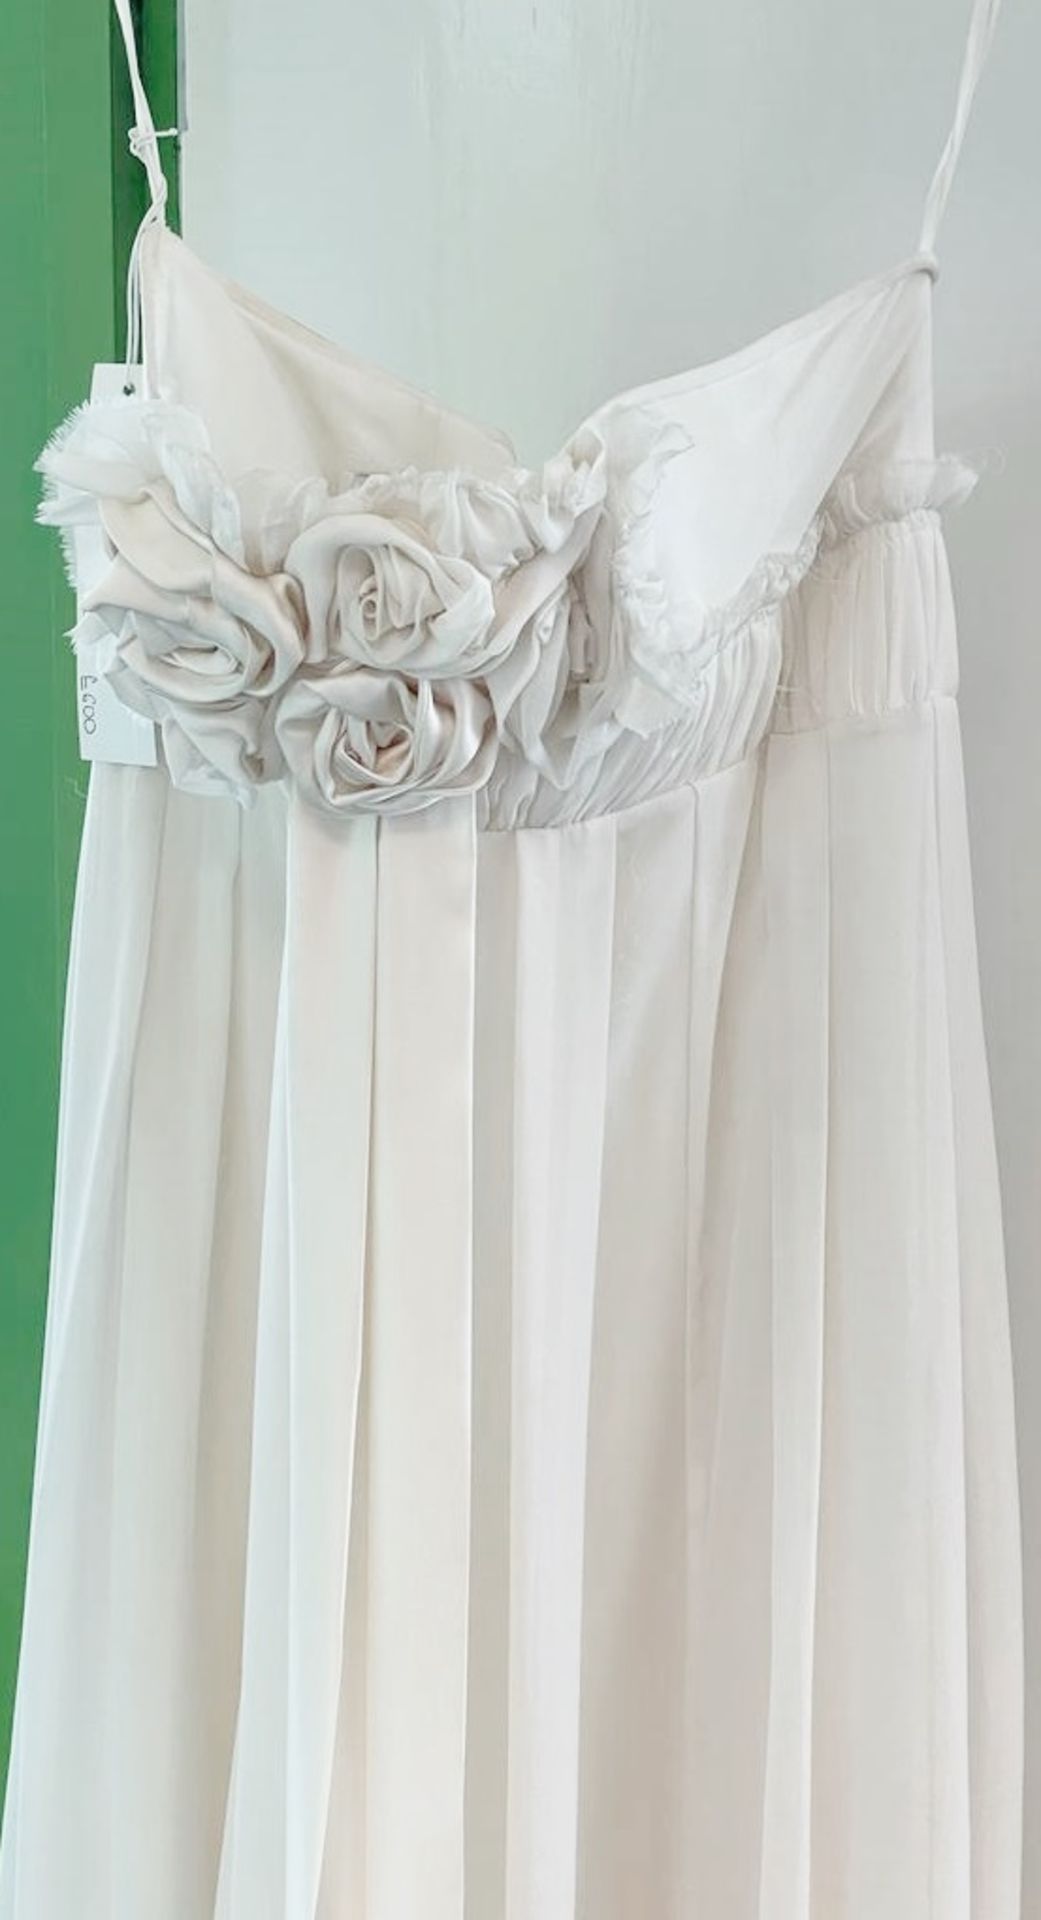 1 x DAVID FIELDEN Designer Silk Strapless Grecian-style Column Wedding Dress Bridal Gown, With - Image 3 of 8